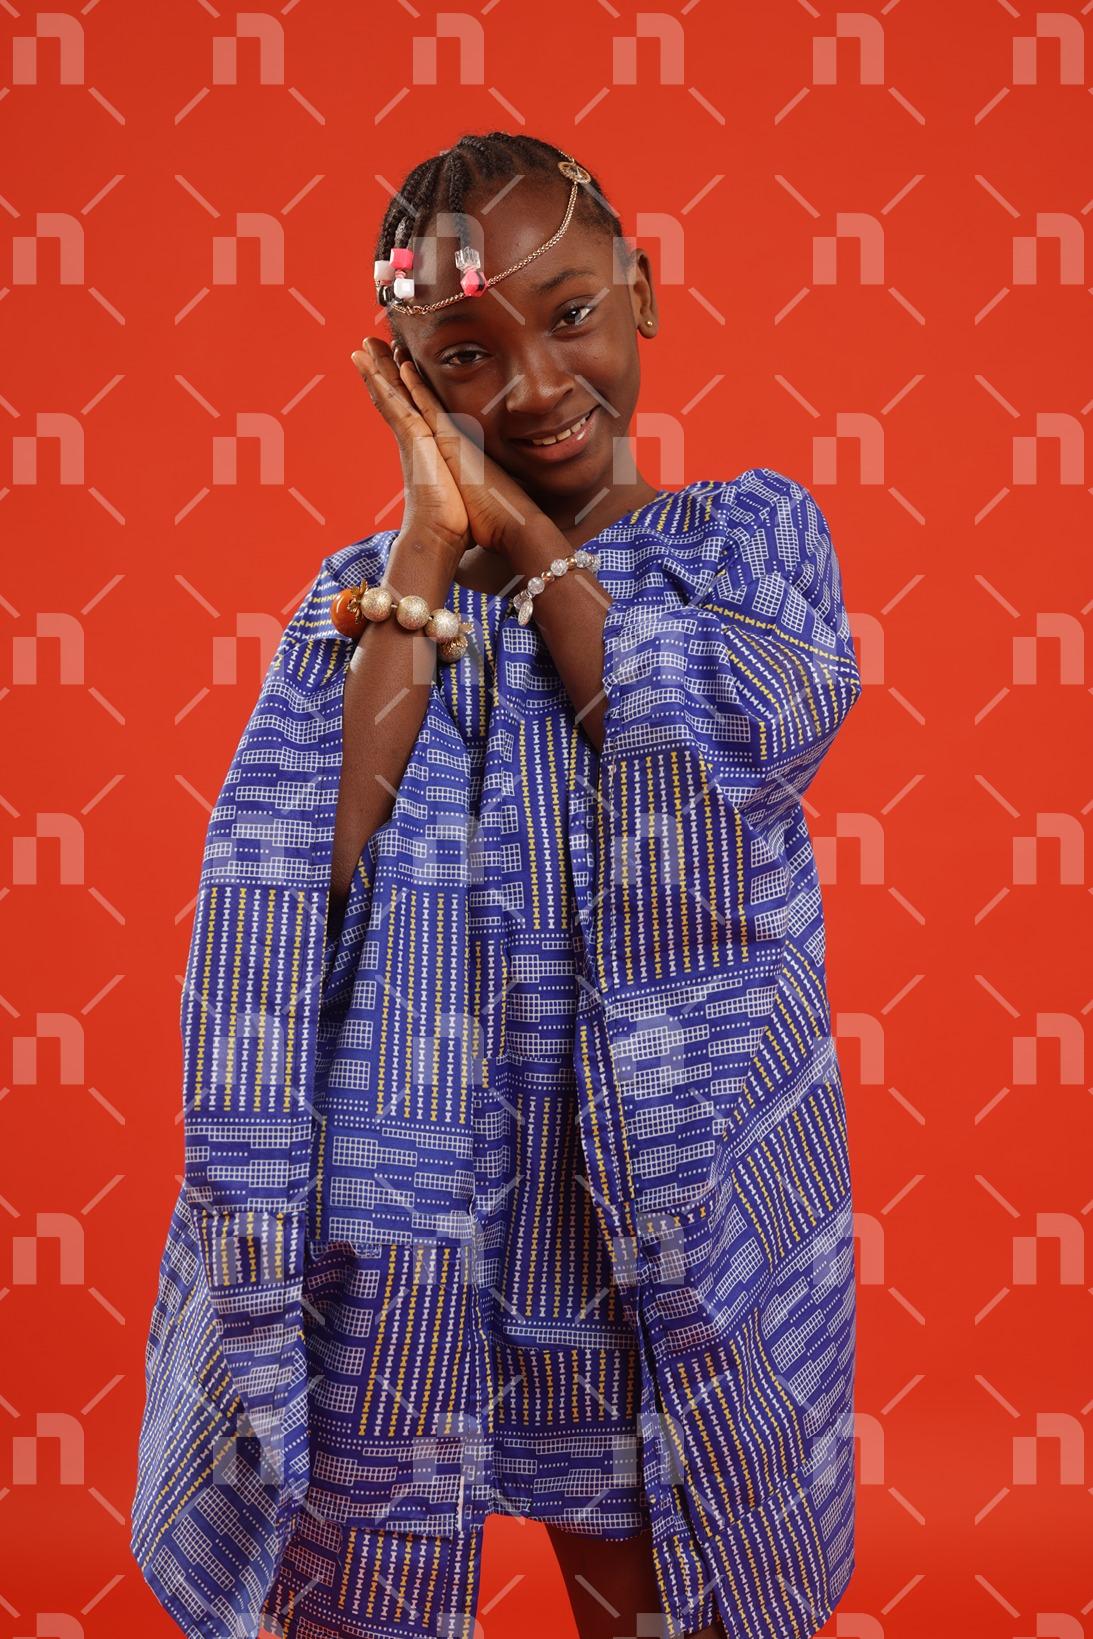 fillette-africaine-moderne-vetue-dune-robe-de-couleur-bleu-dans-une-posture-la-tete-posee-sur-les-deux-mains-jointes-sous-la-joue-avec-un-grand-sourire-pour-une-photo-studio